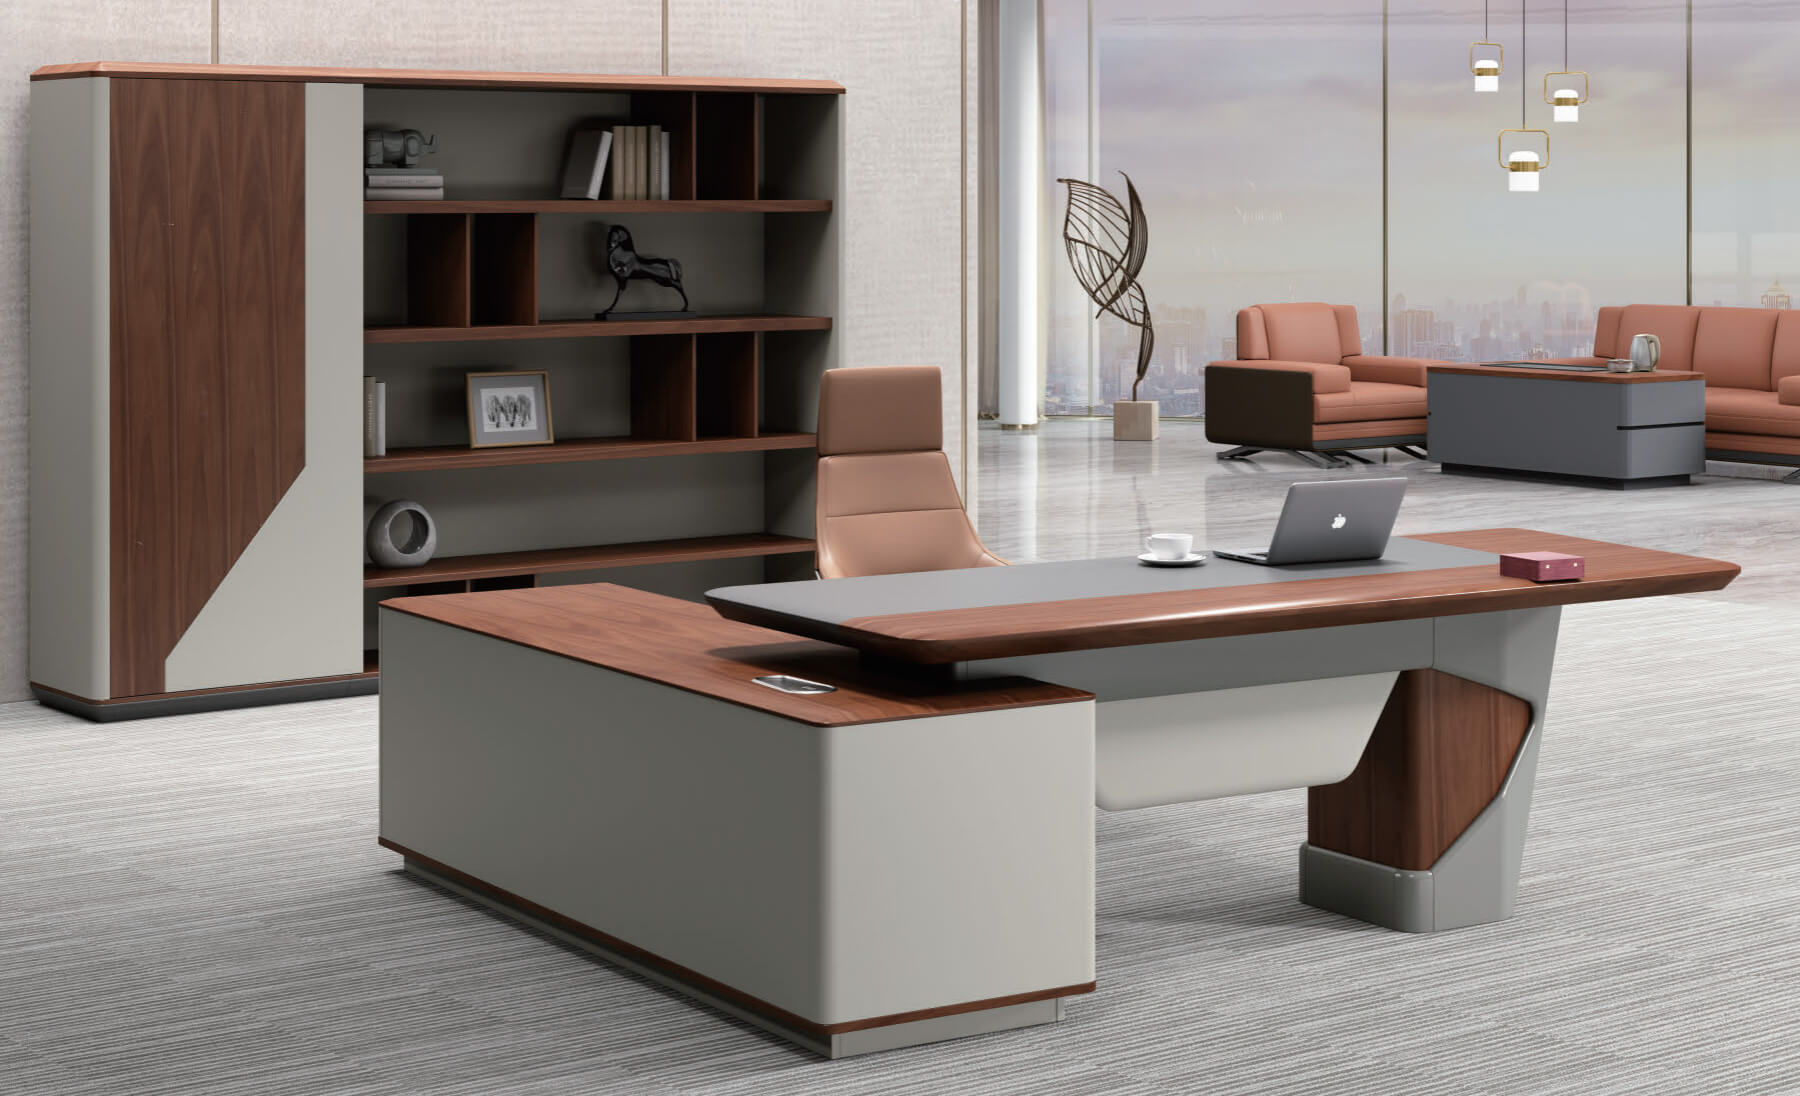 Mosca series executive desk